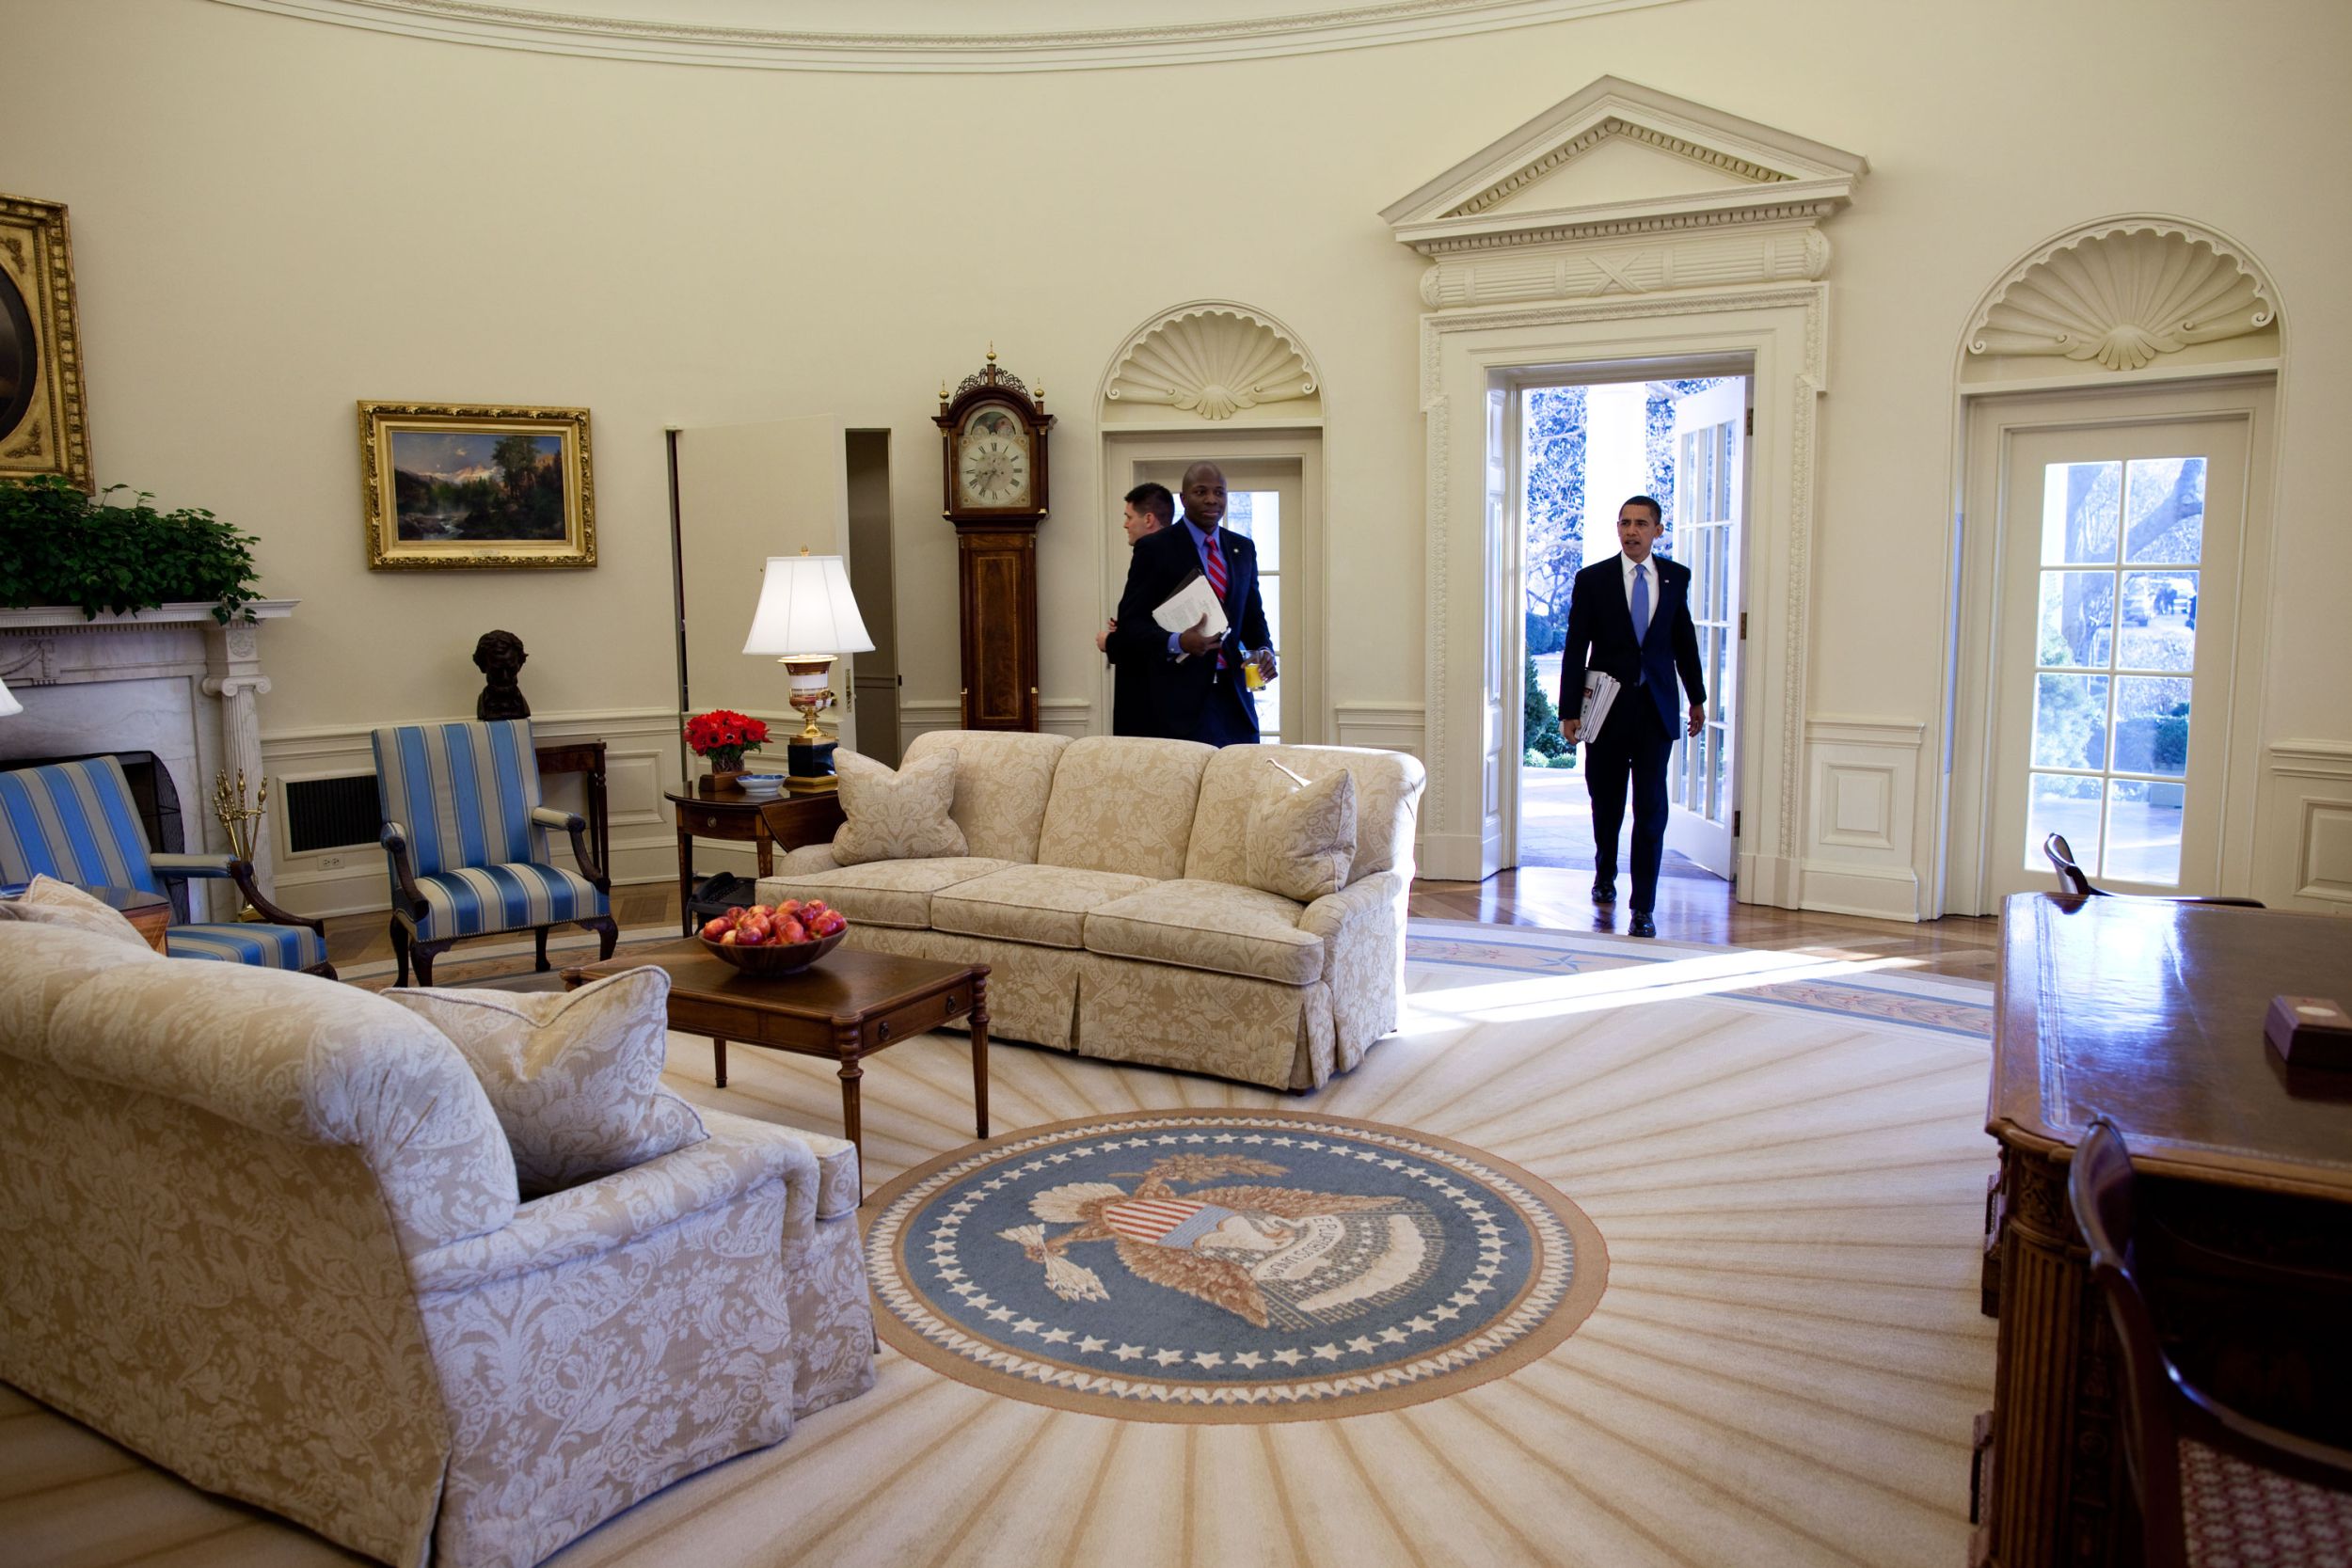 วันต่อมา โอบามาเข้าห้องทำงานรูปไข่ เป็นการเริ่มต้นการทำงานเต็มเวลาวันแรกในฐานะประธานาธิบดีสหรัฐ / Official White House Photo by Pete Souza